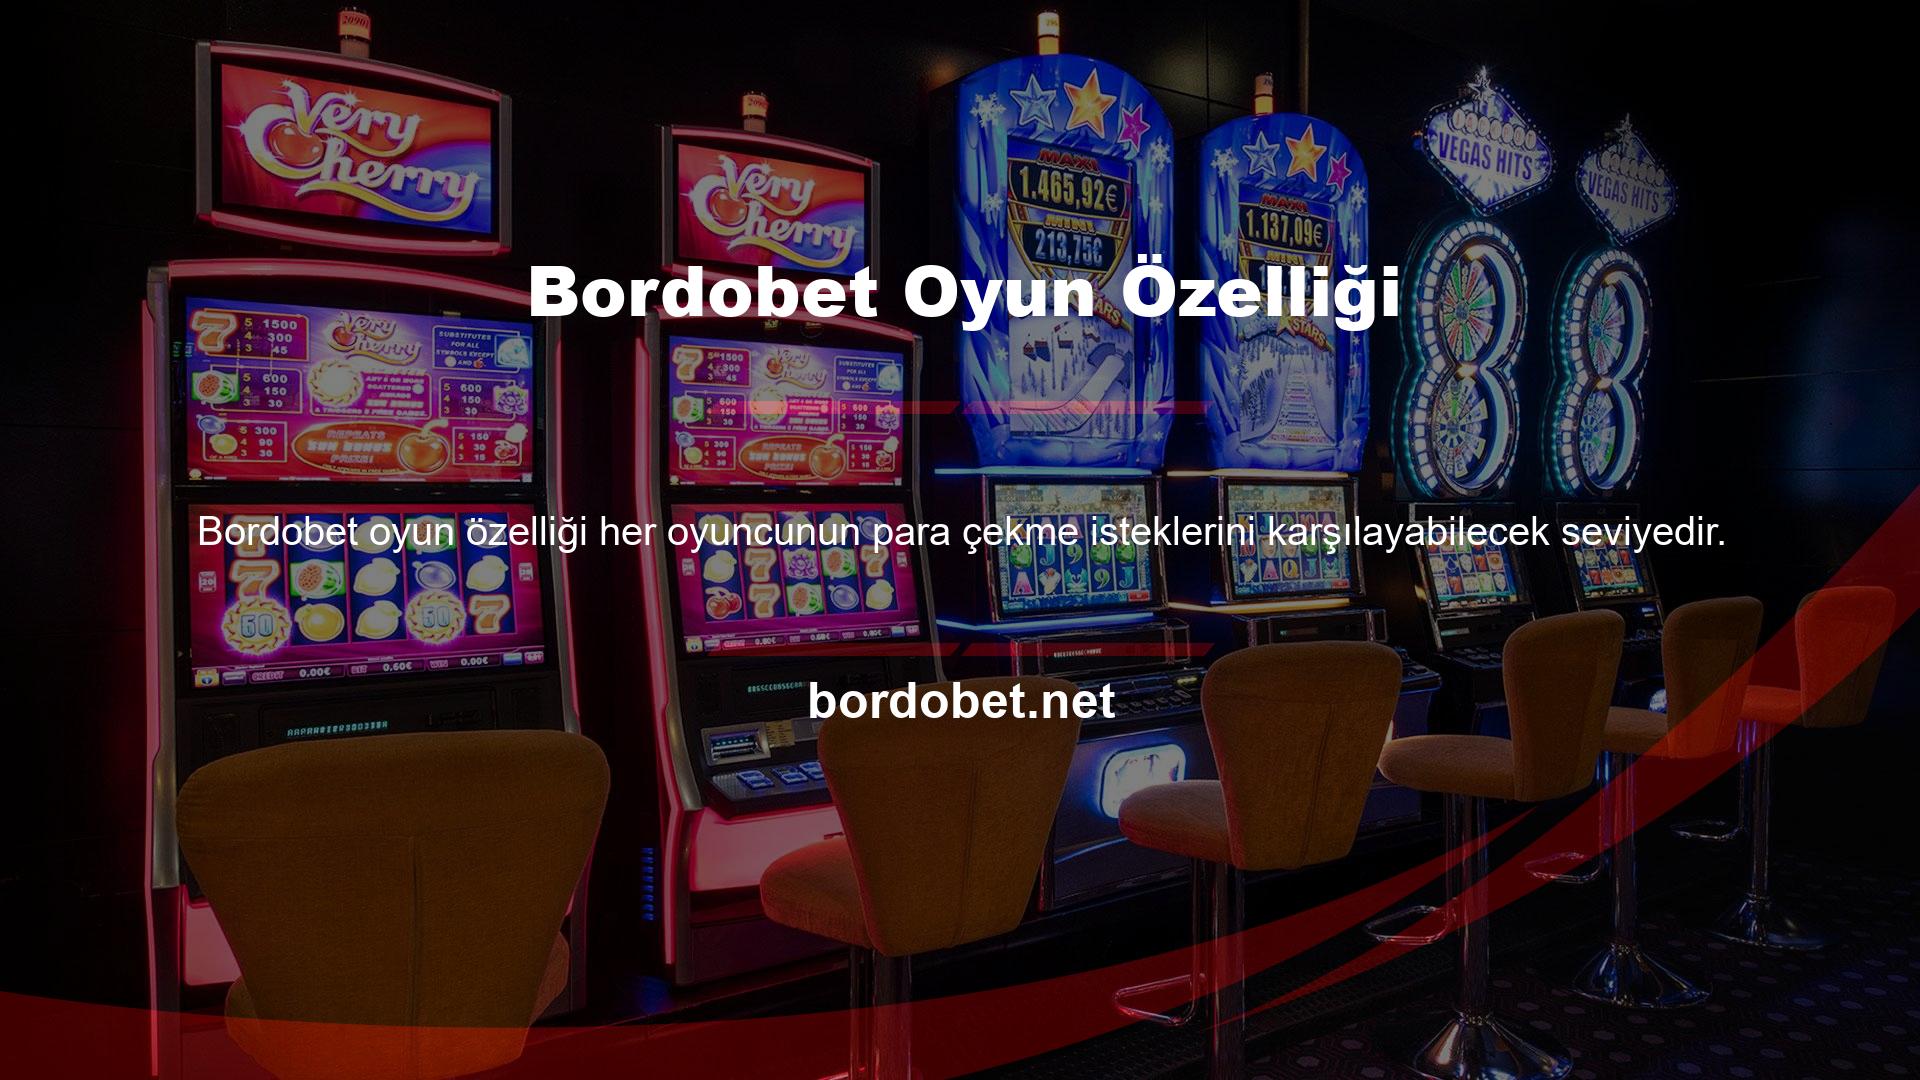 Bu sitenin oyun özelliği olan Bordobet sanal futbol seçeneği bu avantajı sağlamaktadır